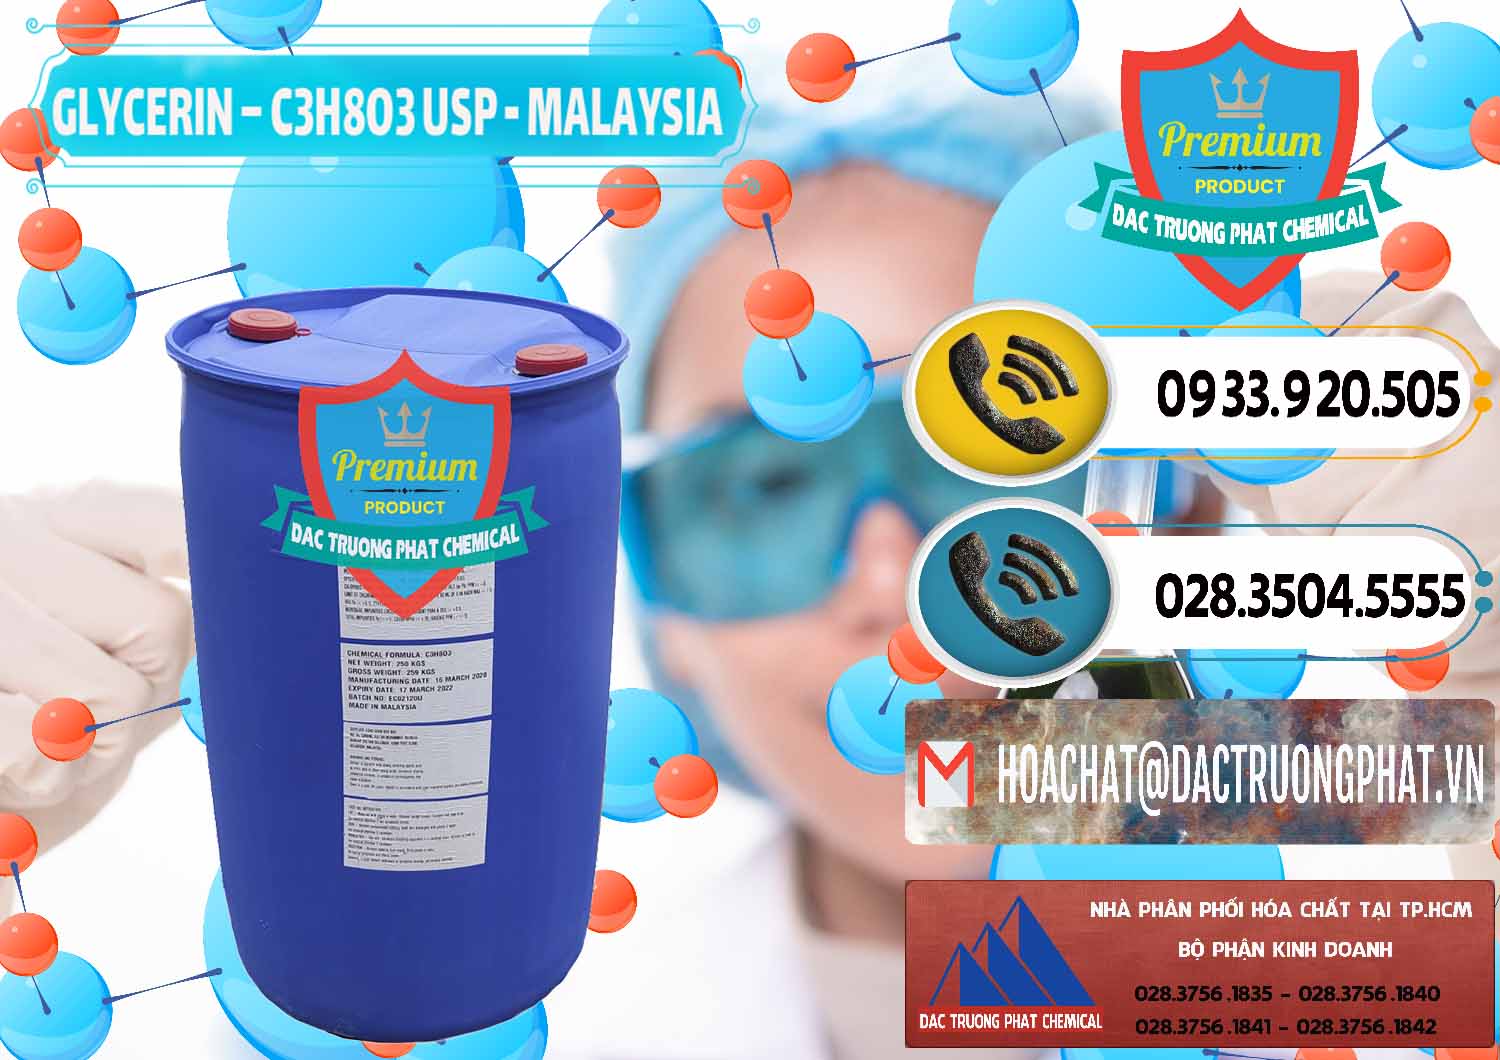 Nơi chuyên bán _ phân phối Glycerin – C3H8O3 USP Malaysia - 0233 - Chuyên phân phối _ cung ứng hóa chất tại TP.HCM - hoachatdetnhuom.vn